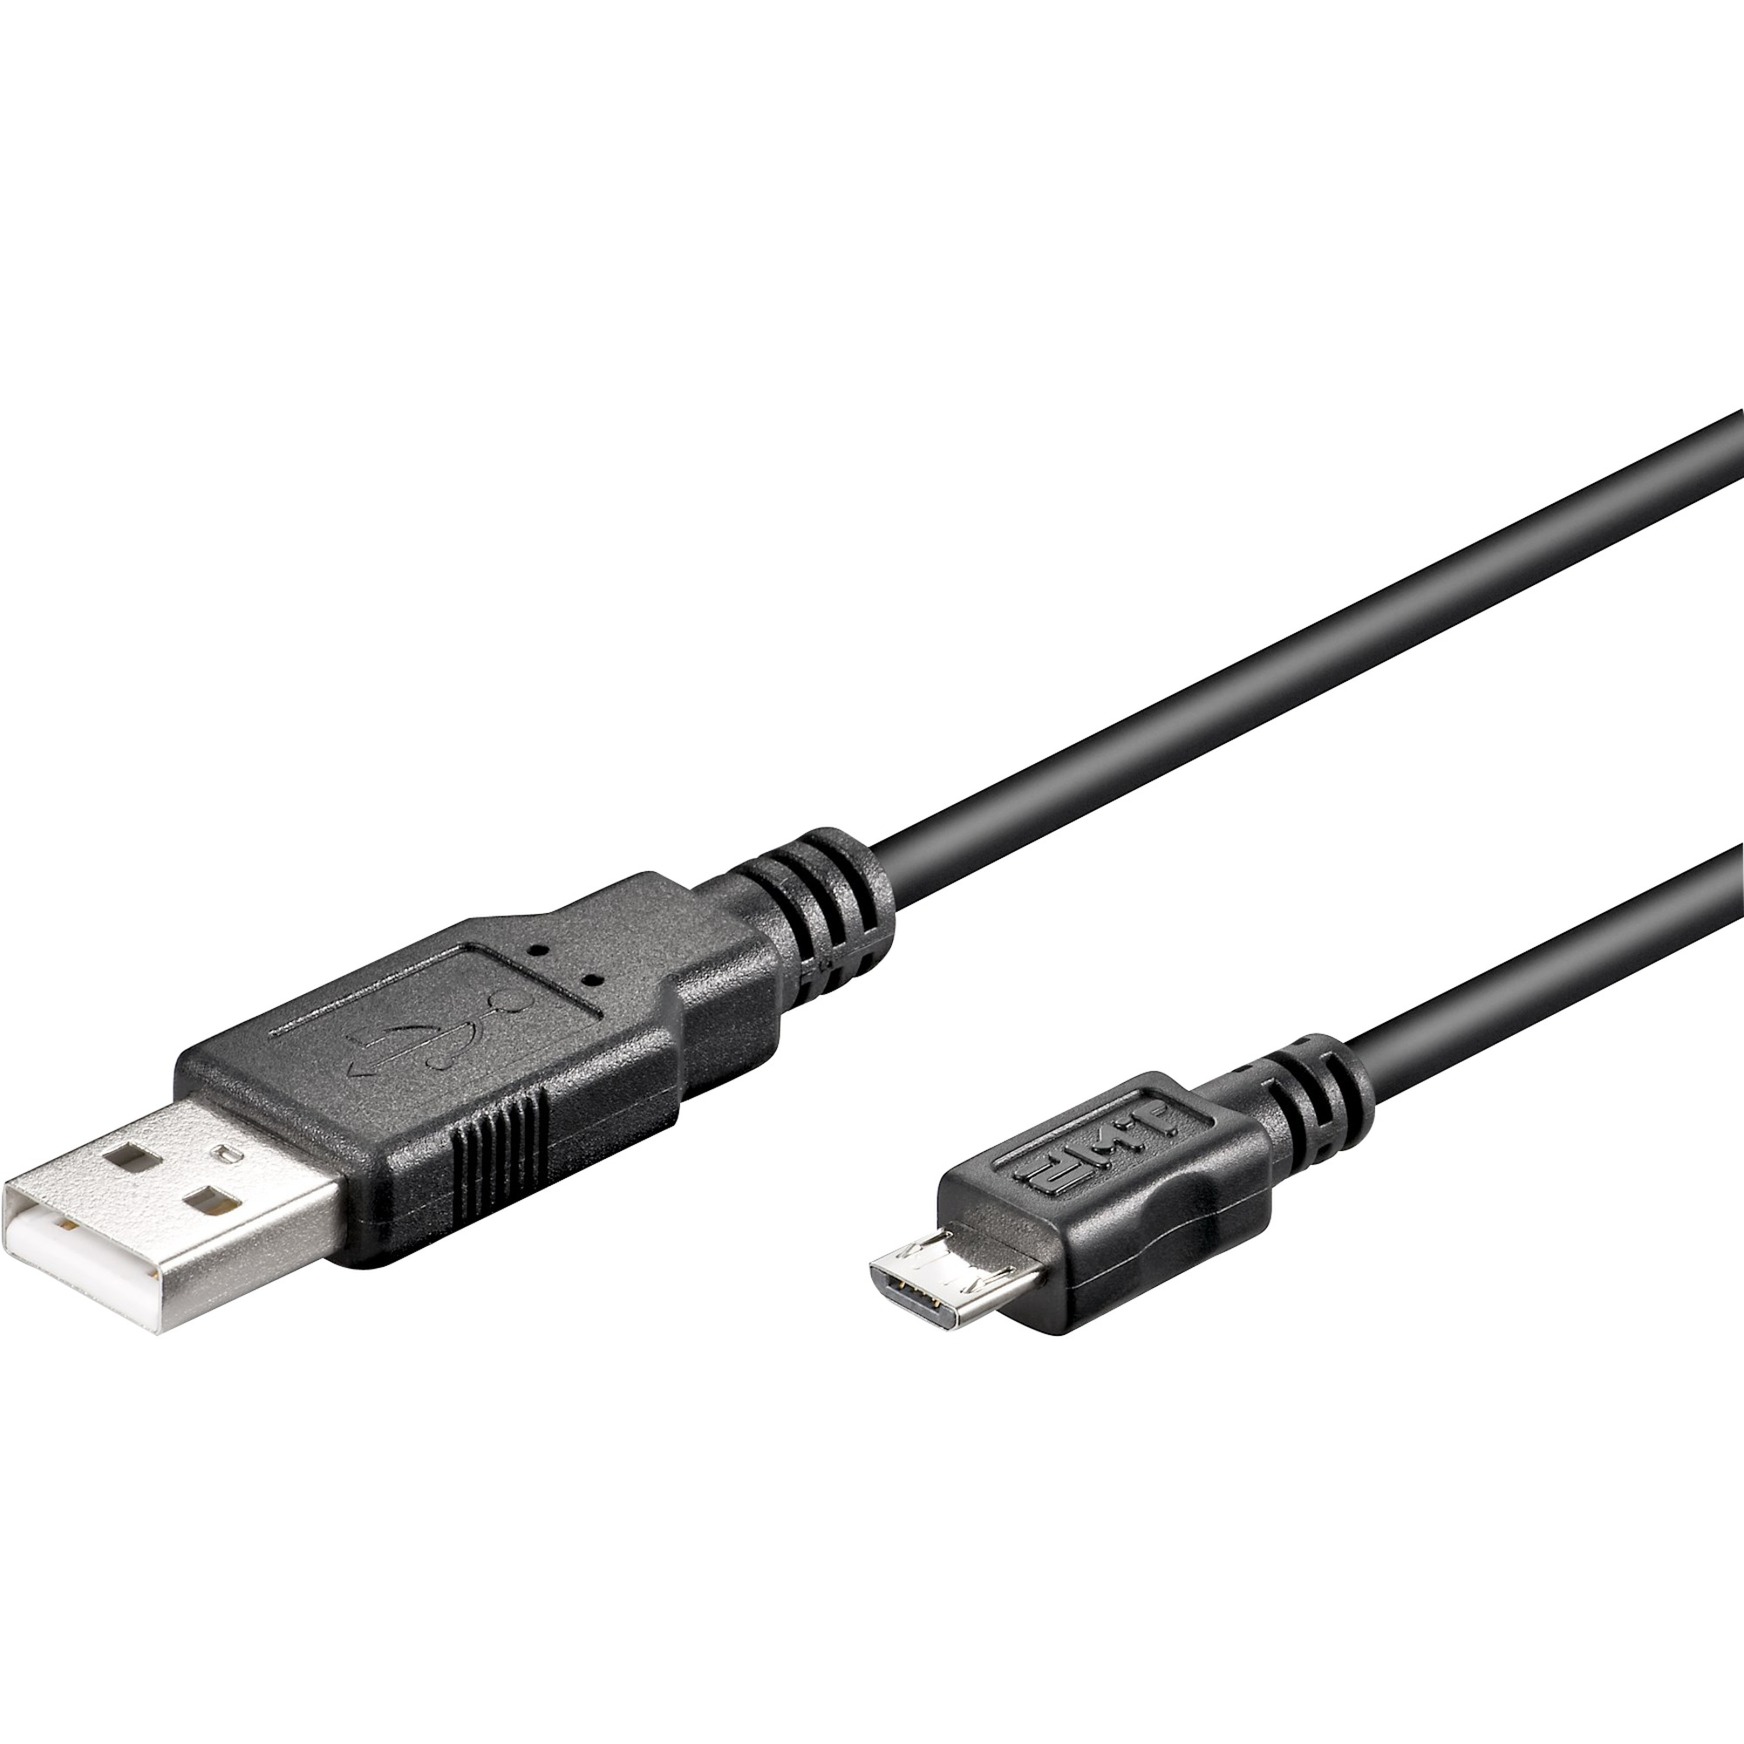 Image of Alternate - Kabel USB 2.0 A > Micro-USB B online einkaufen bei Alternate